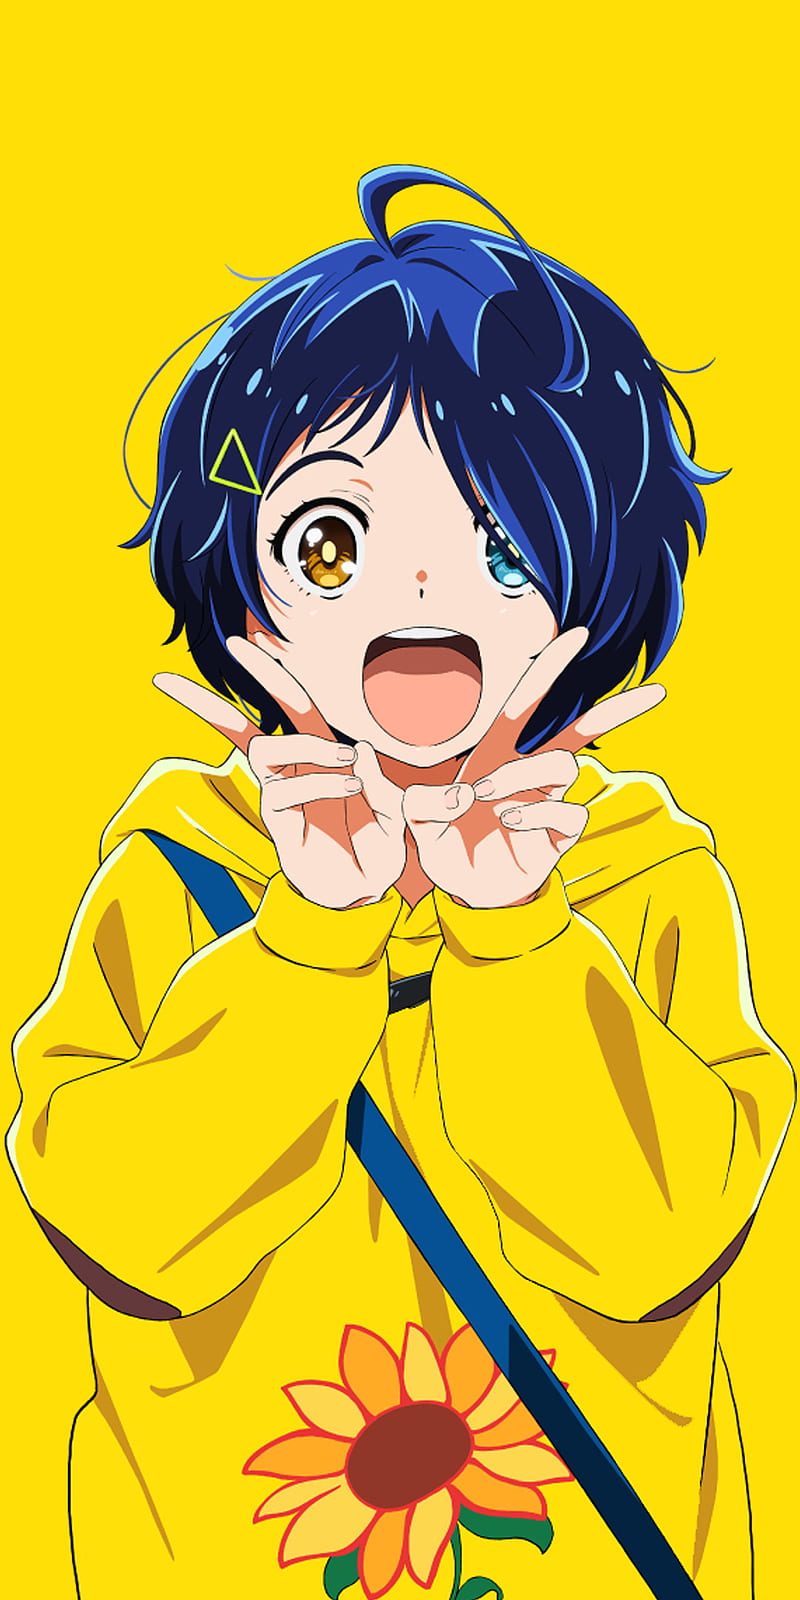 Share 69 Anime Girl Blue Hair Best Vn